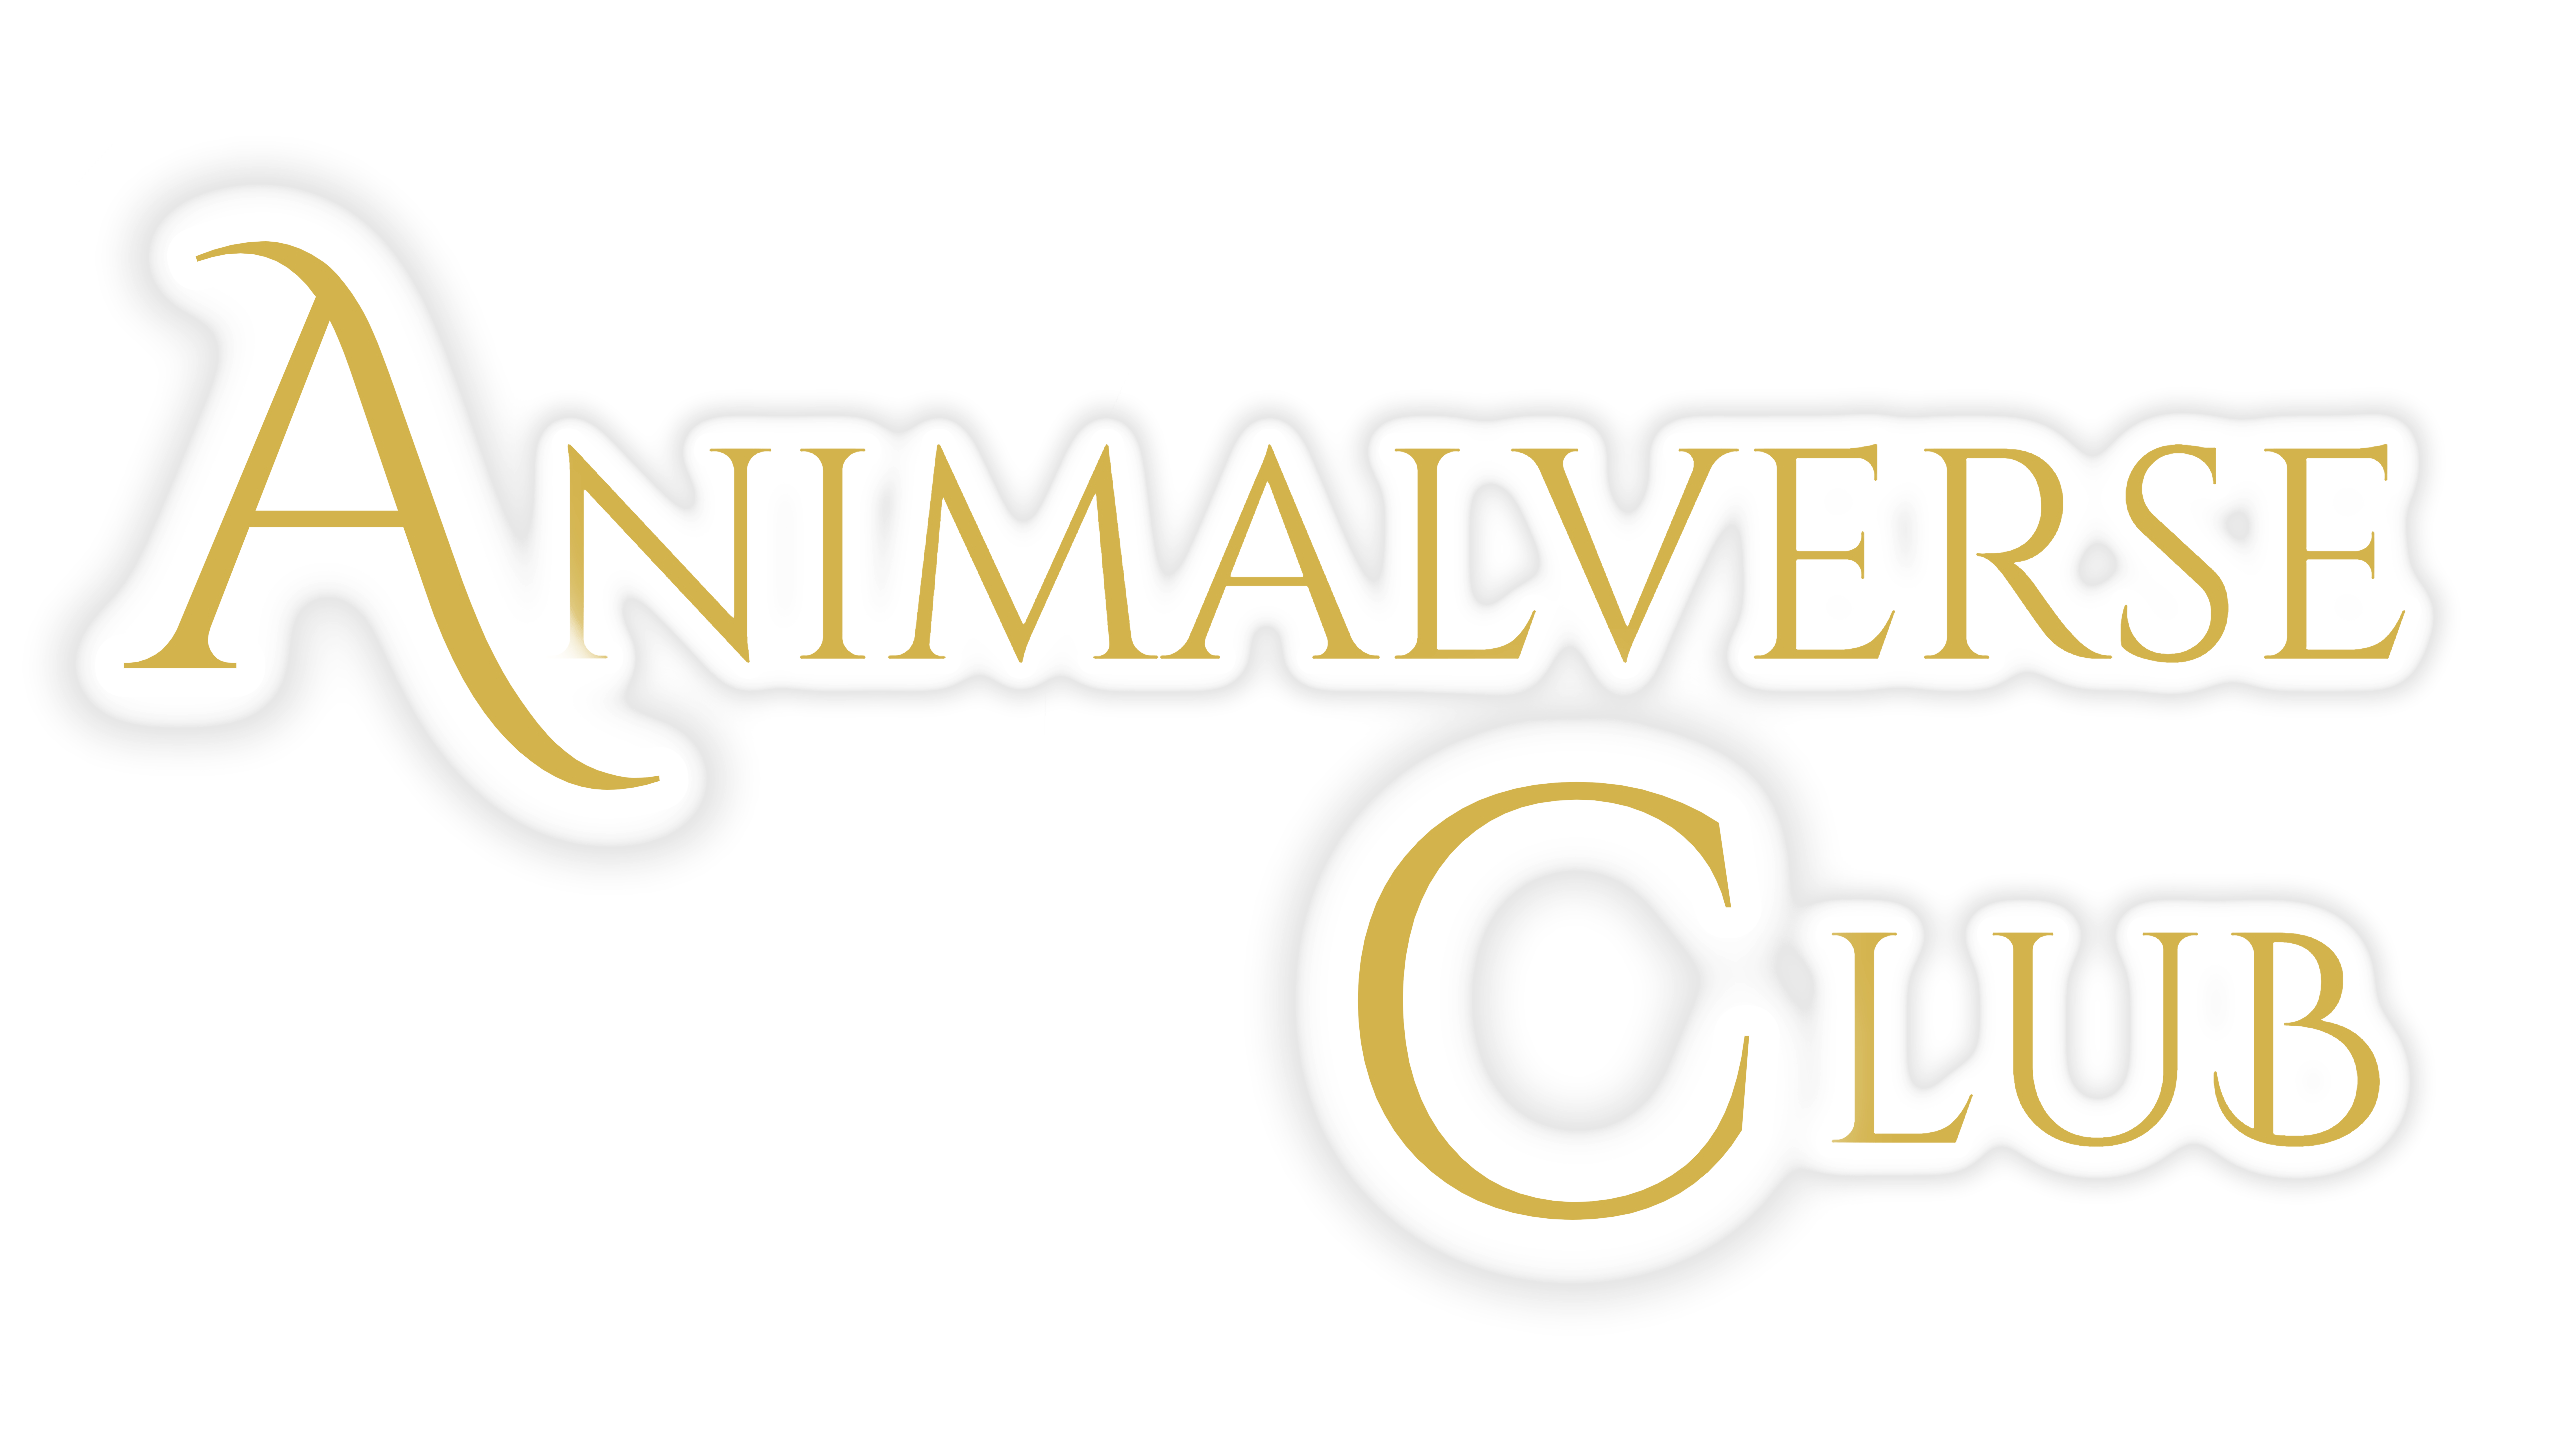 Animalverse Club AVC